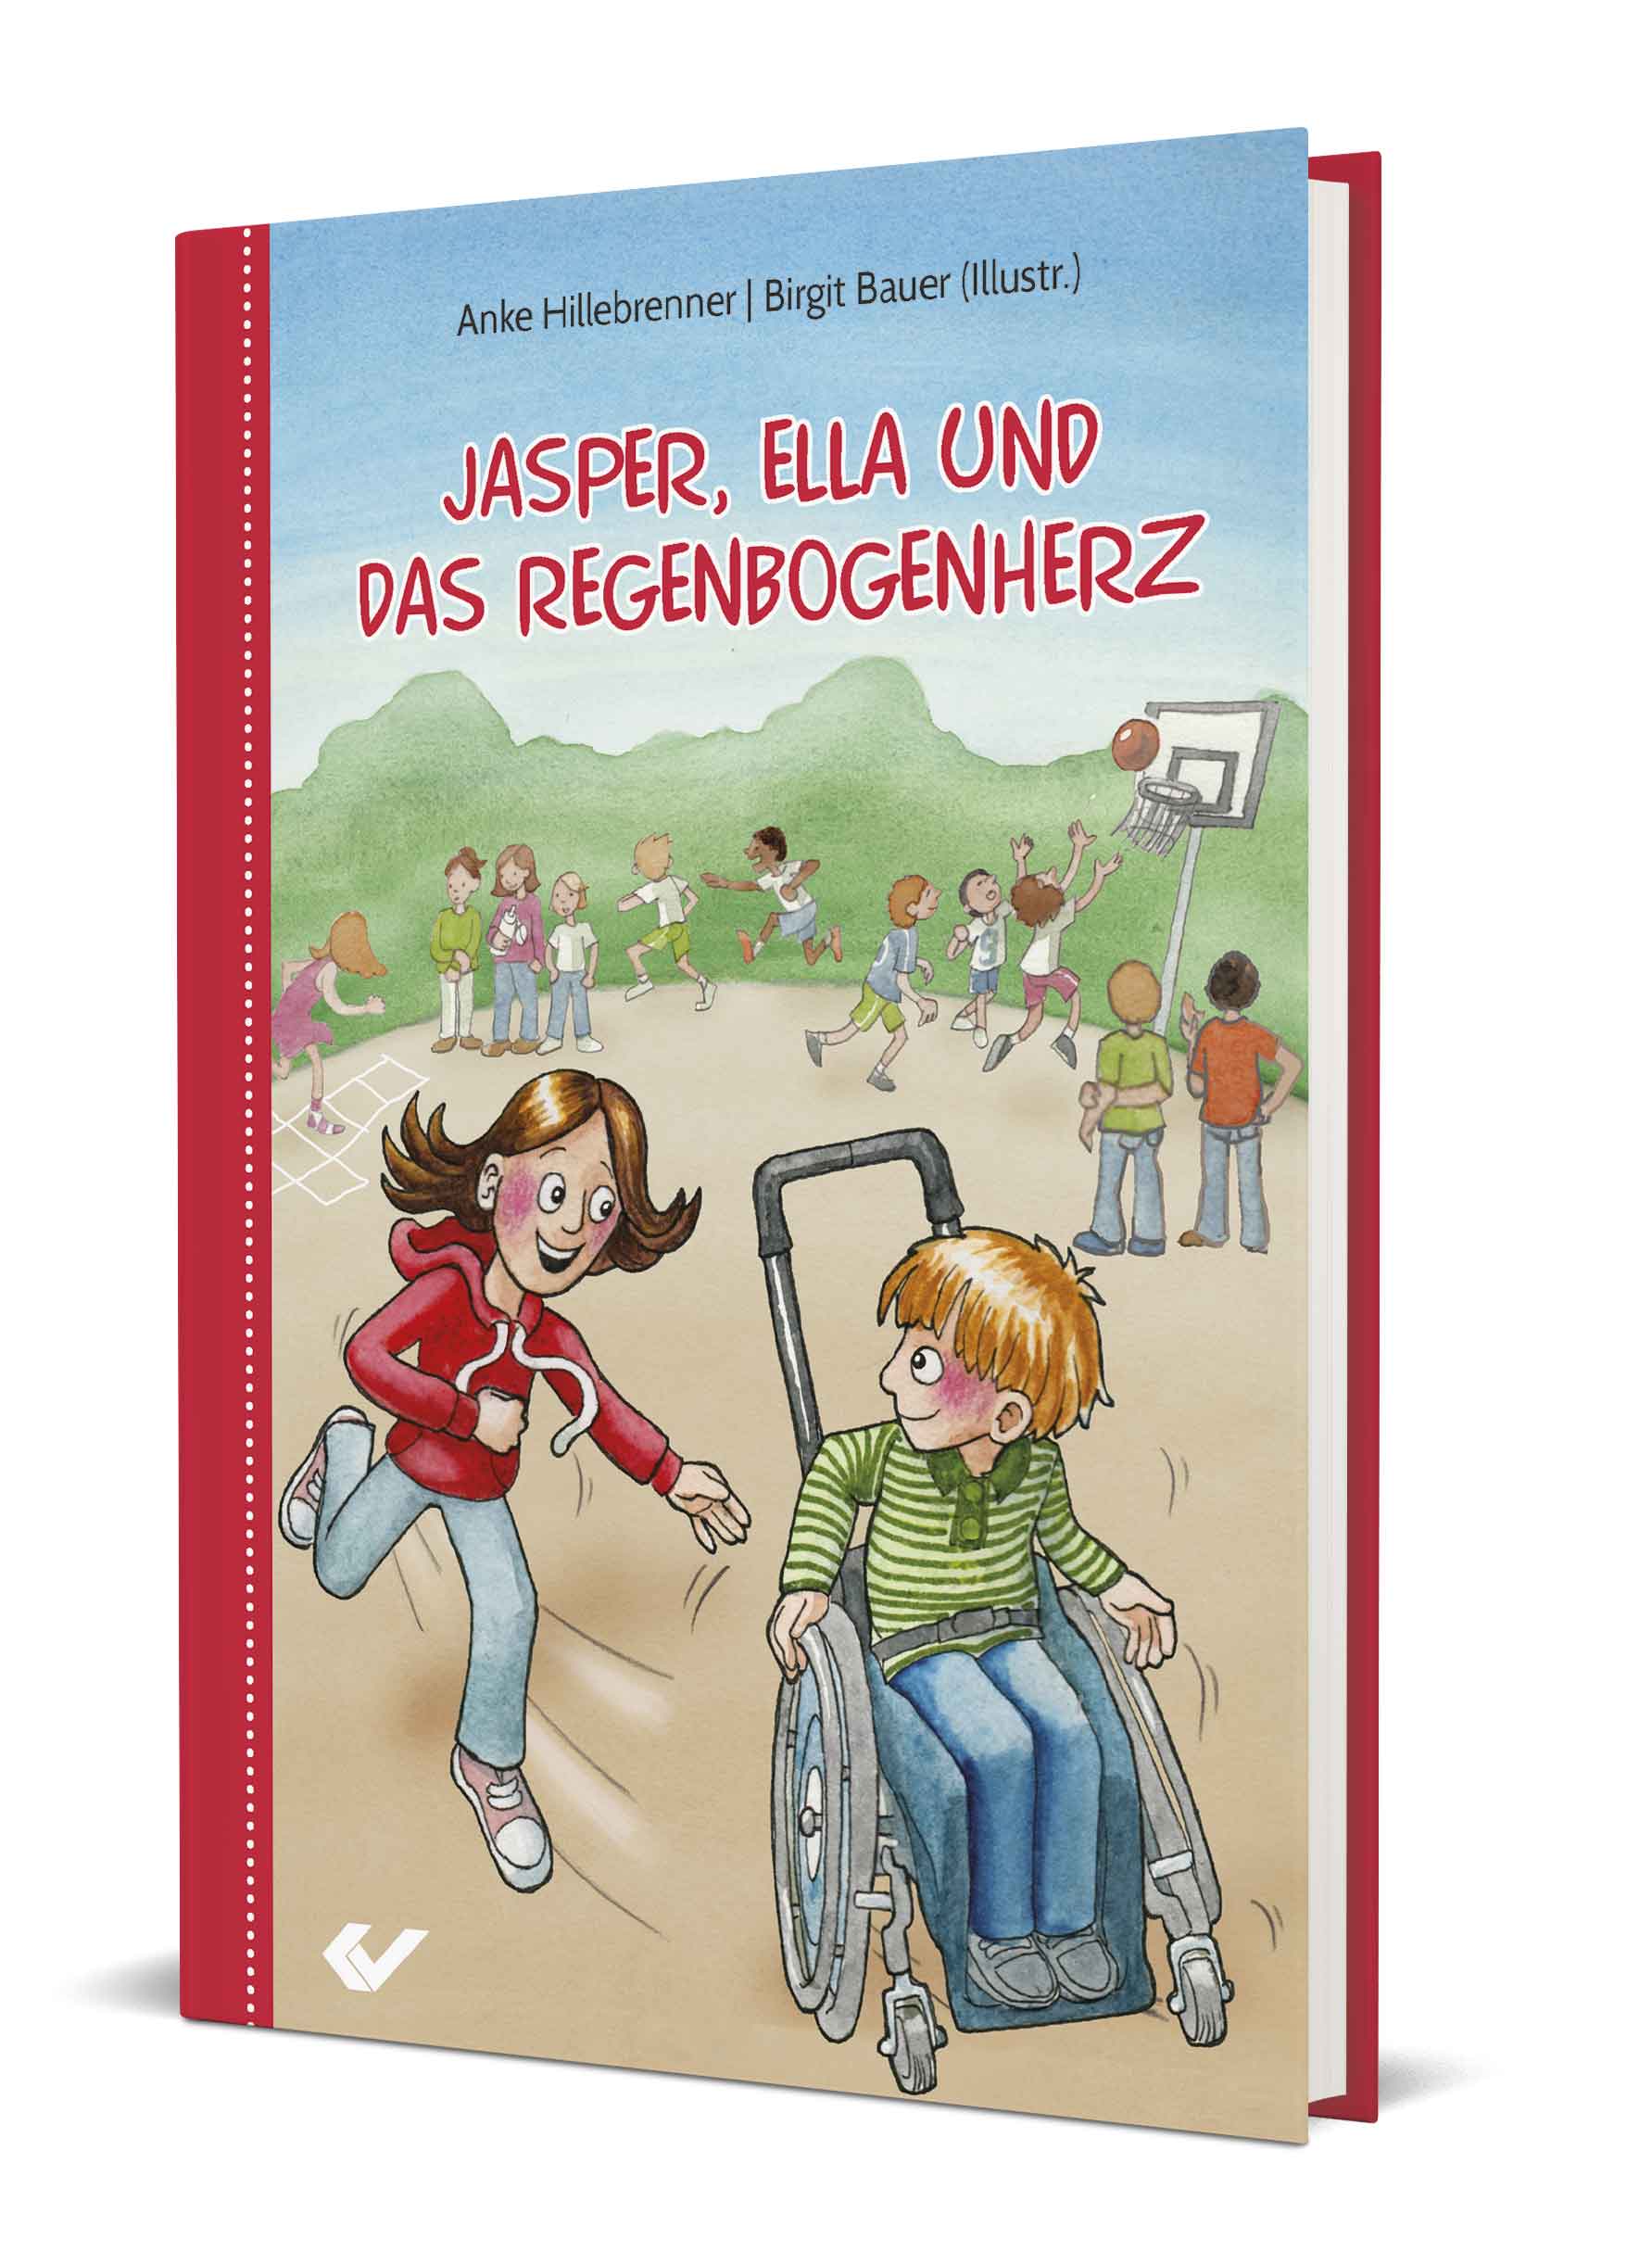 Anke Hillebrenner/Birgit Bauer (Illustr.): Jasper, Ella und das Regenbogenherz